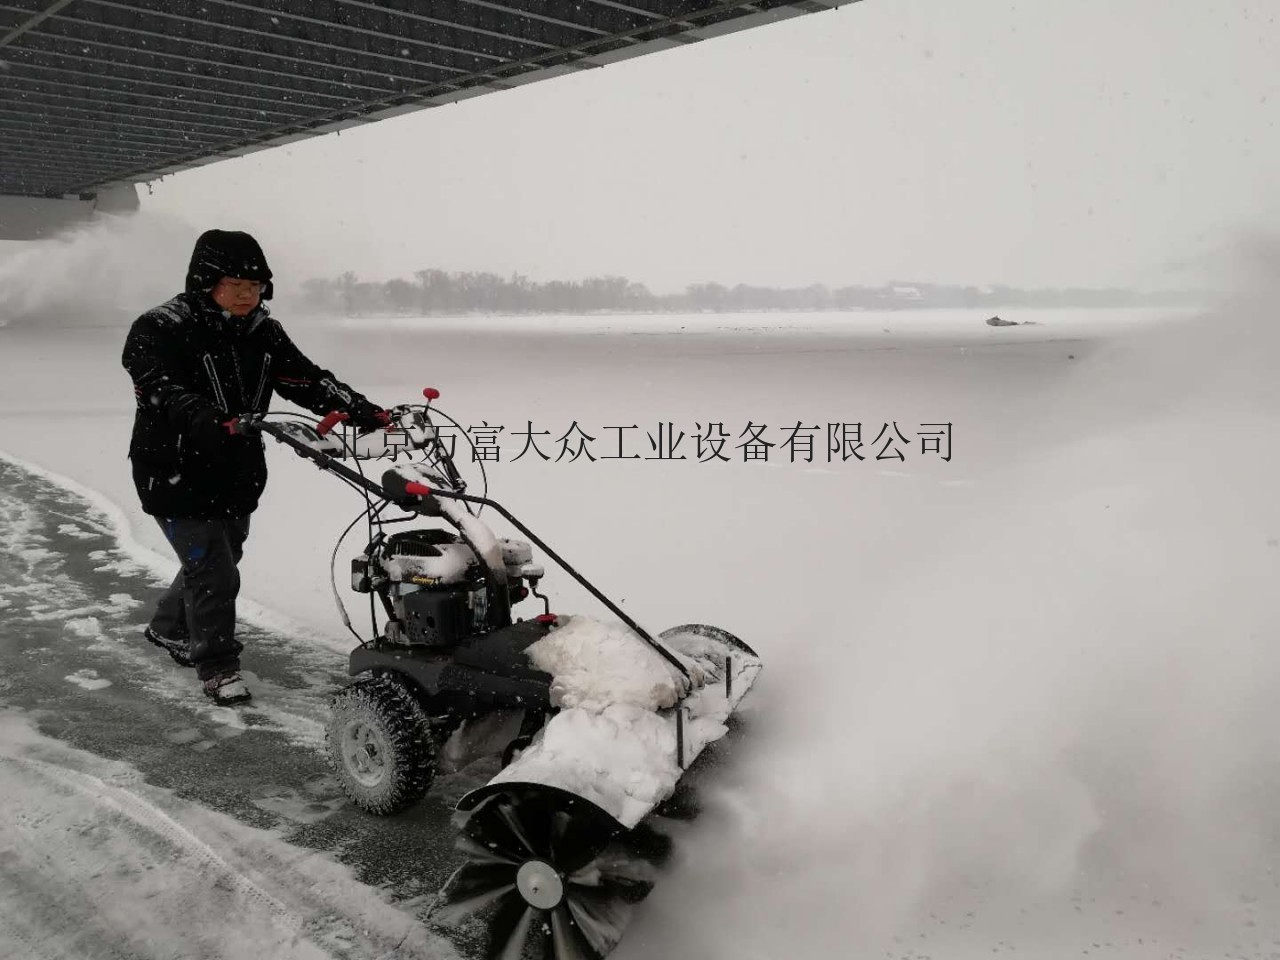 北京掃雪機FH-65100B百力通動力環衛手扶式掃雪機廠家價格優惠